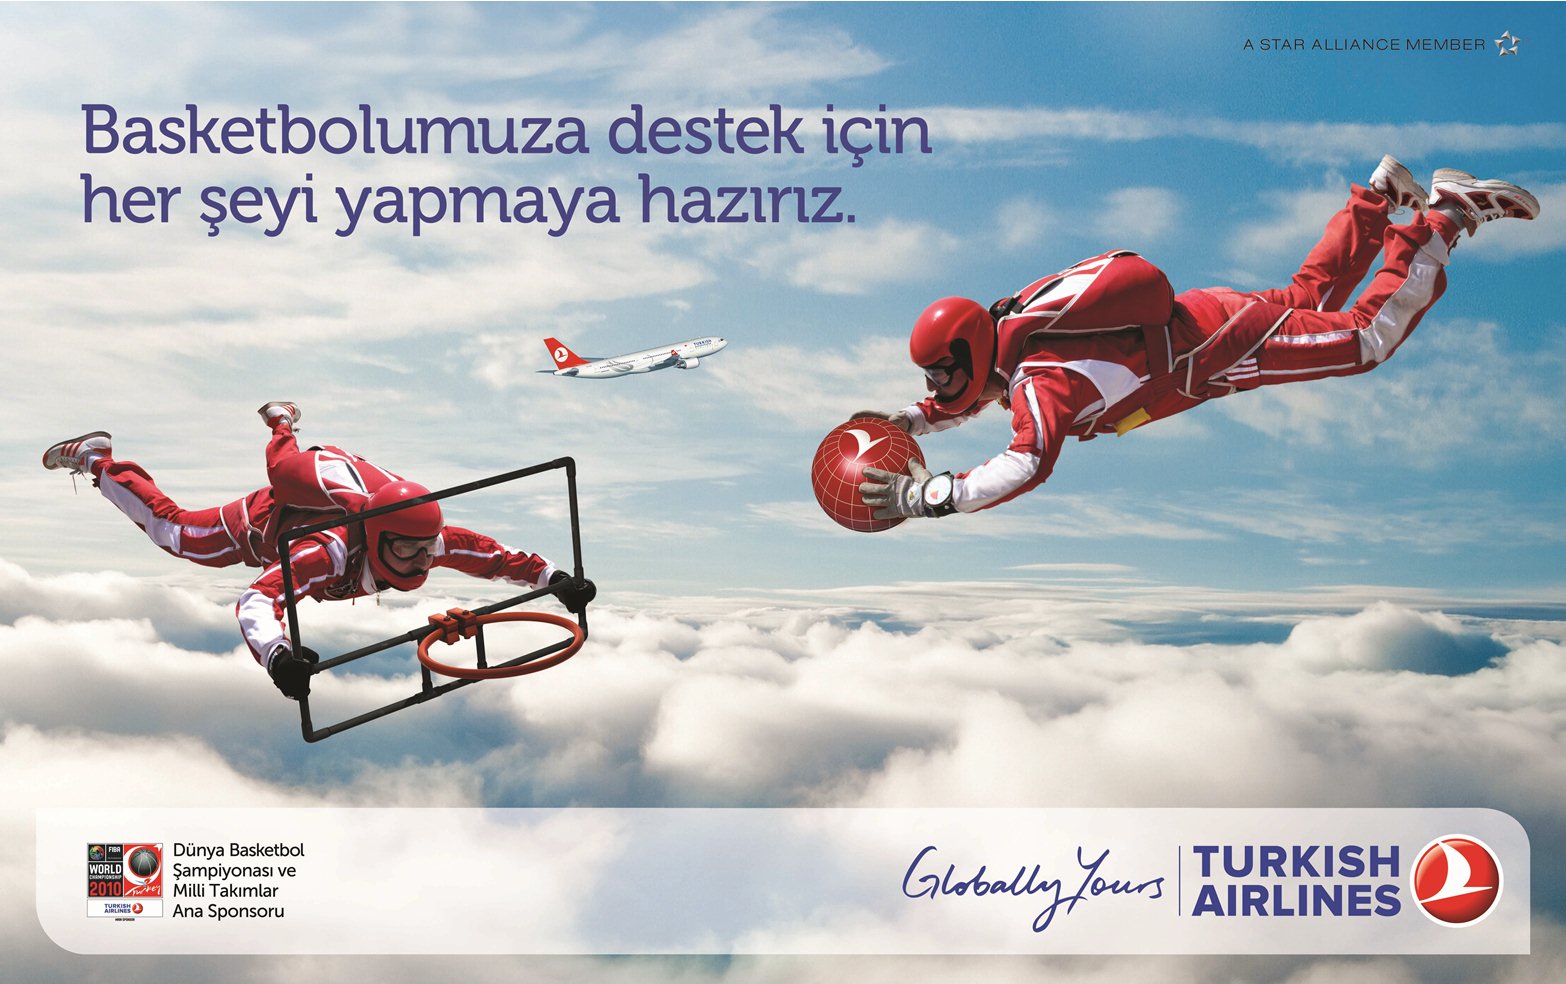 Anadolujet Diyarbakır - Mersin Uçak Bileti Telefon